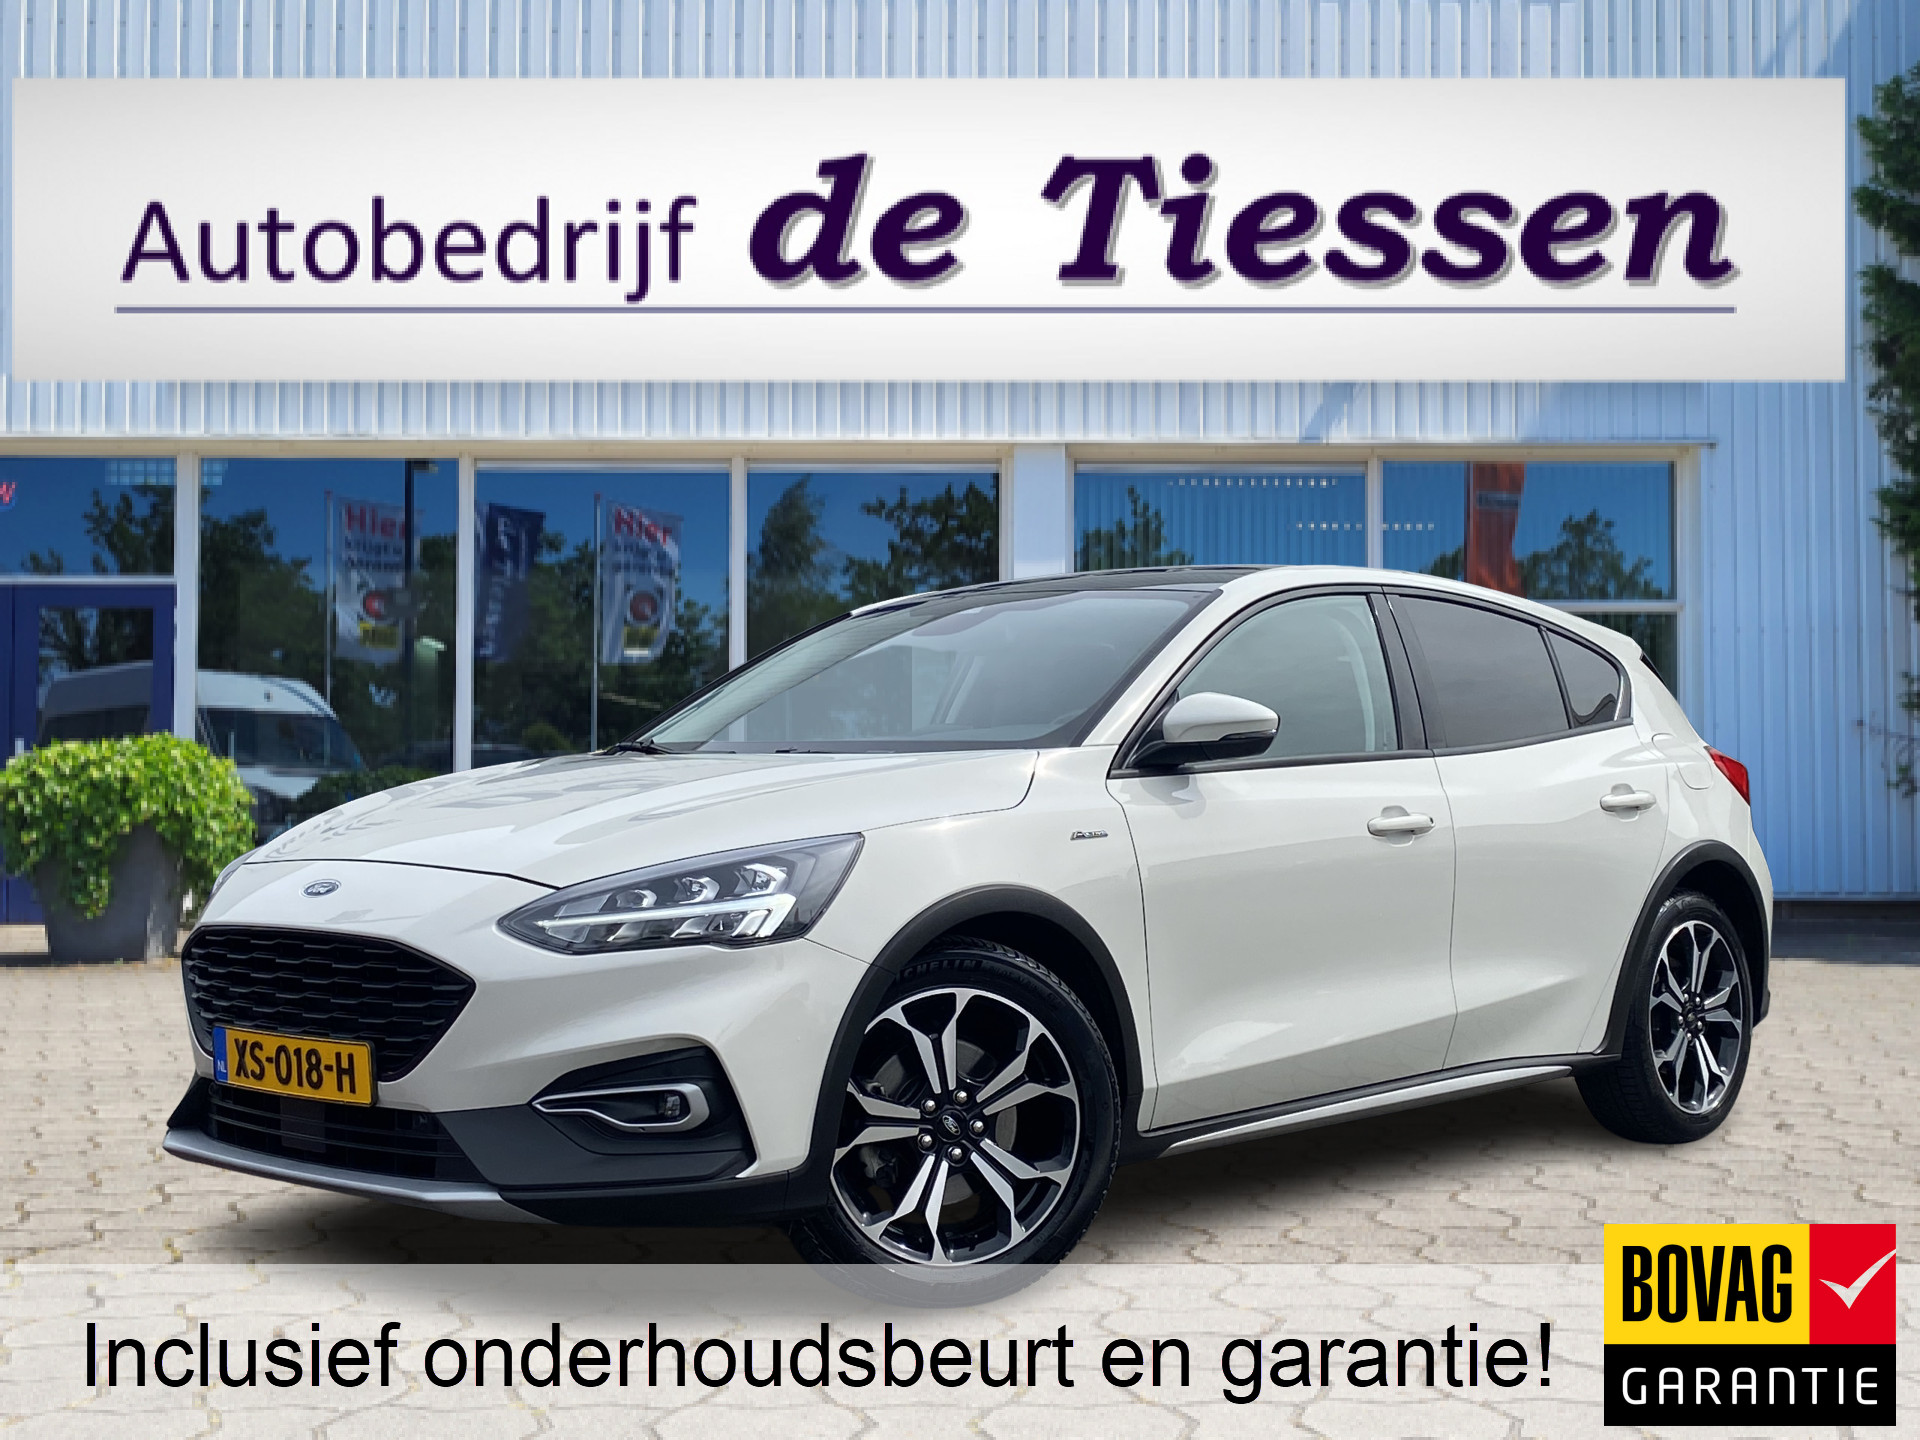 Ford Focus 1.5 EcoBoost Active Business 150 PK, Navi, Cruise, Airco, 18" LM Velgen, Rijklaar met beurt & garantie! bij viaBOVAG.nl